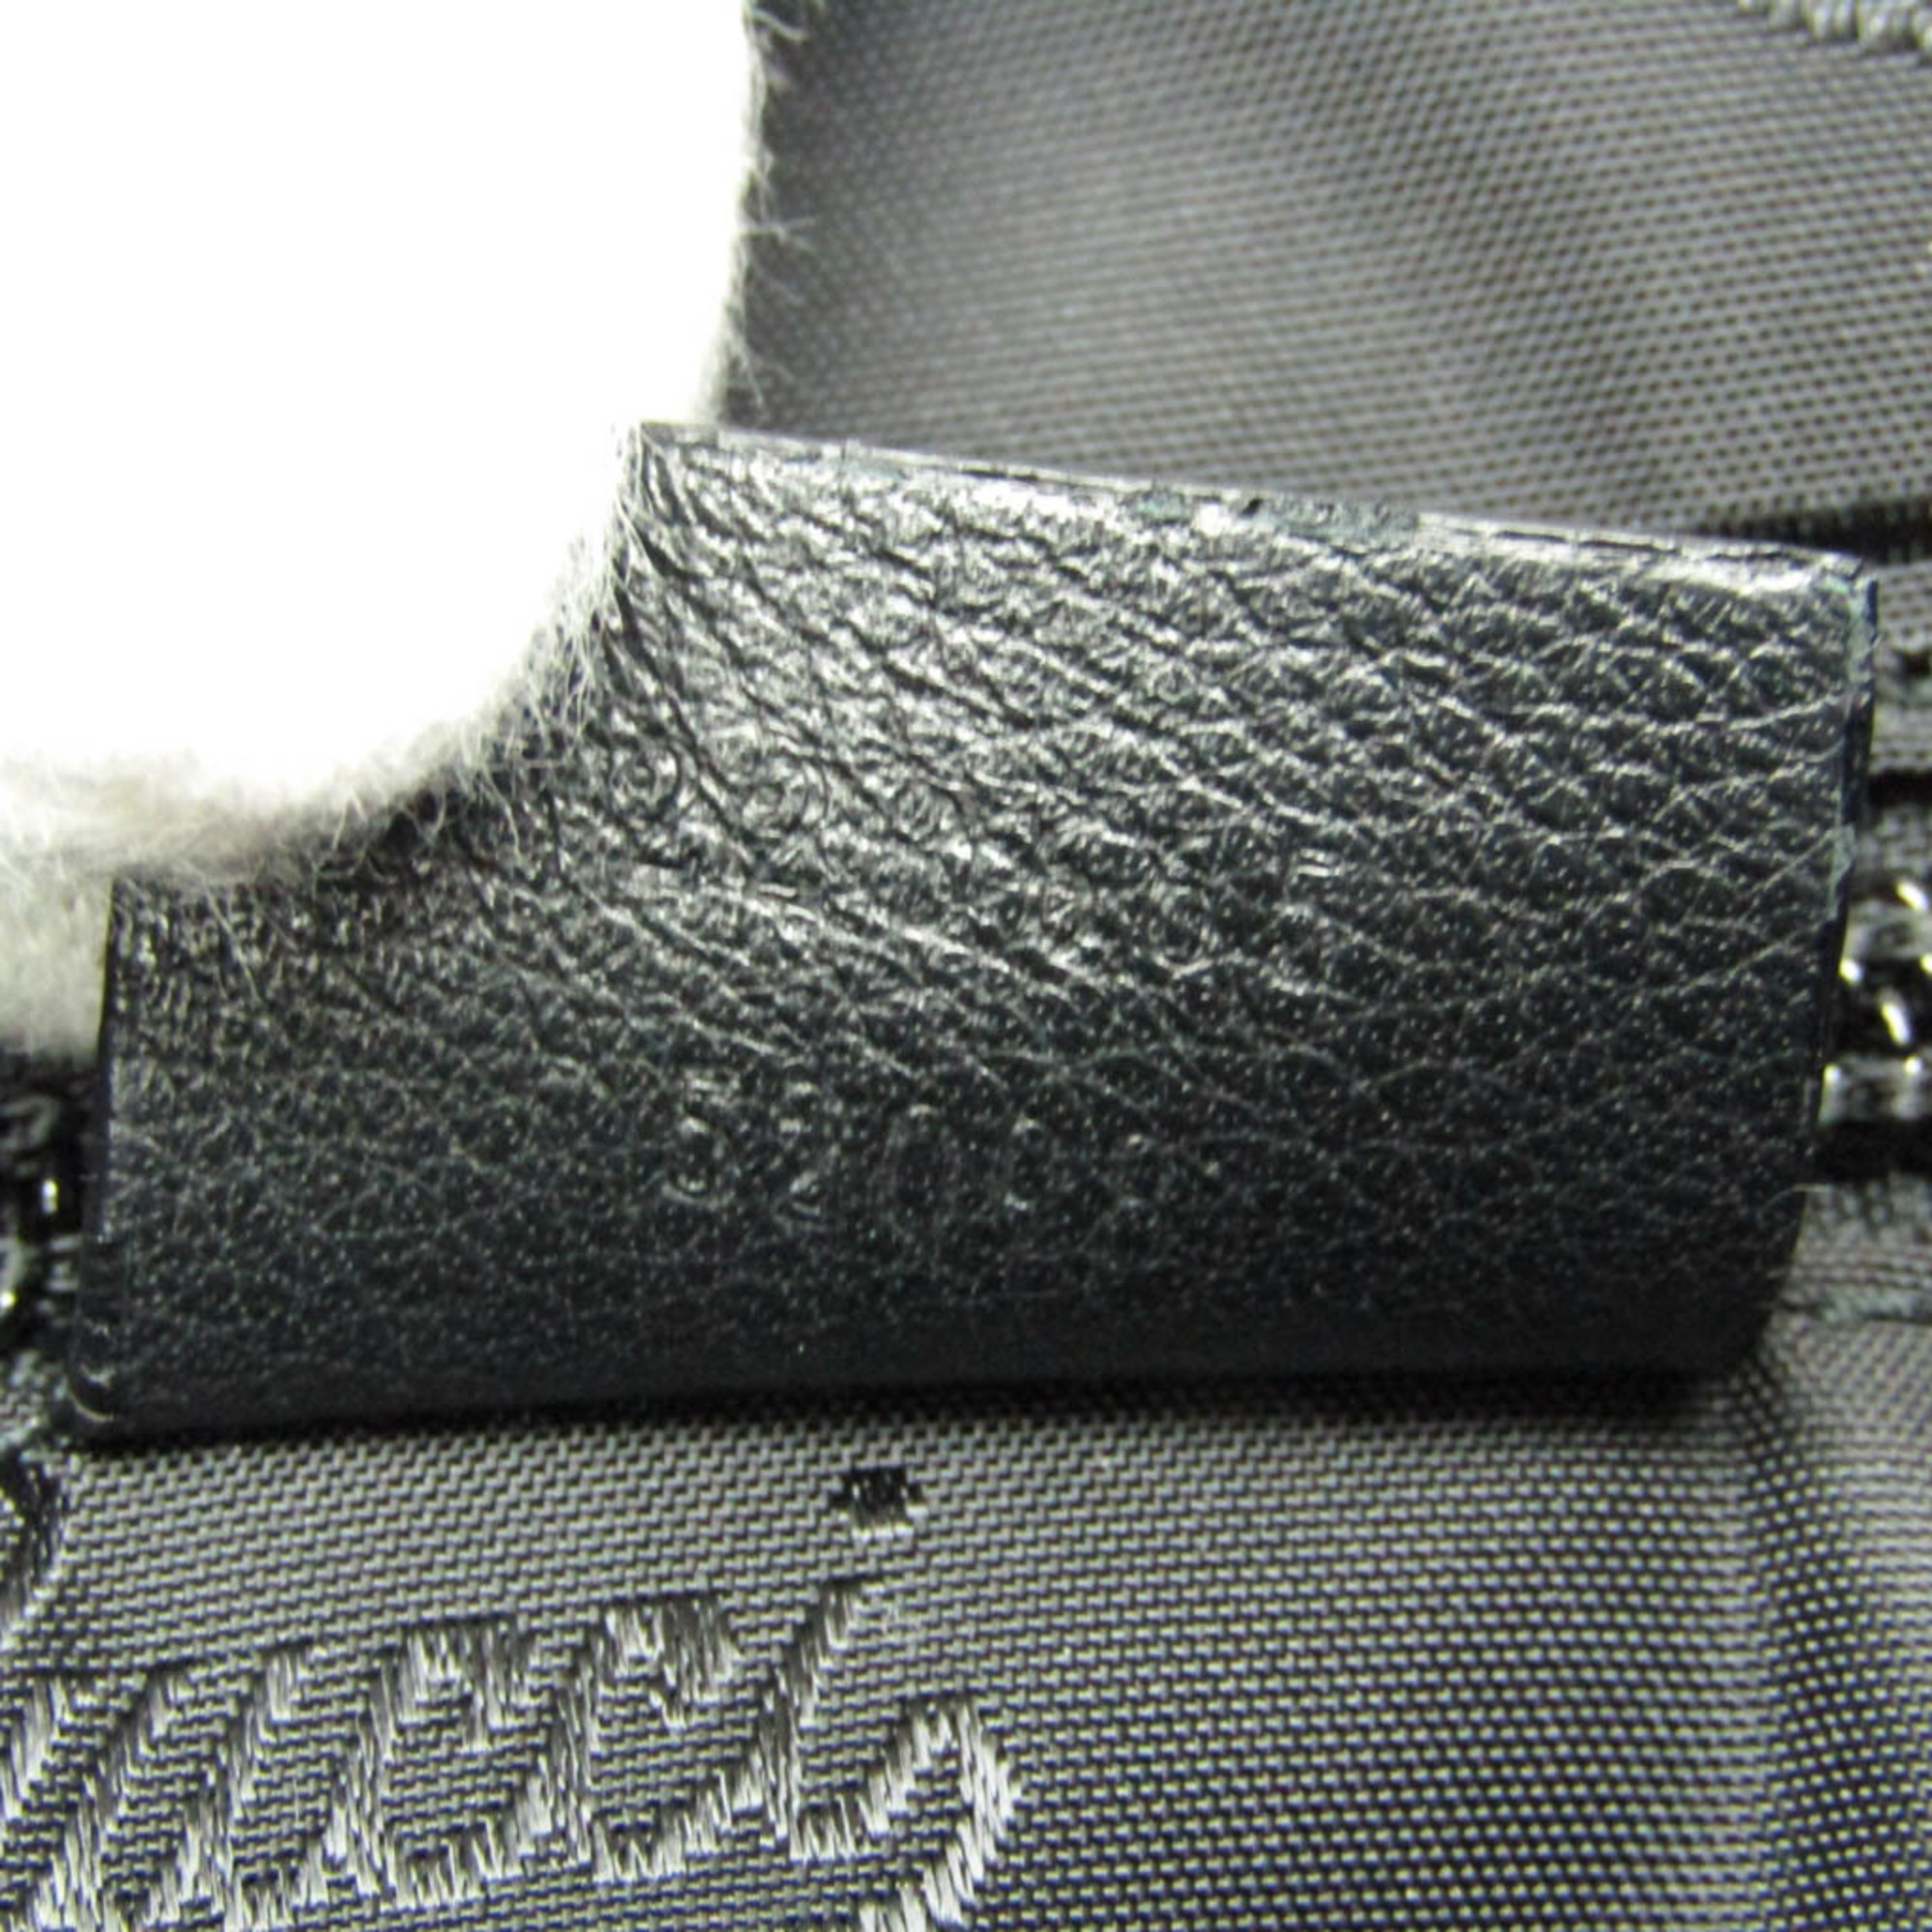 Gucci Guccissima 223665 Men,Women Leather Messenger Bag,Shoulder Bag Black